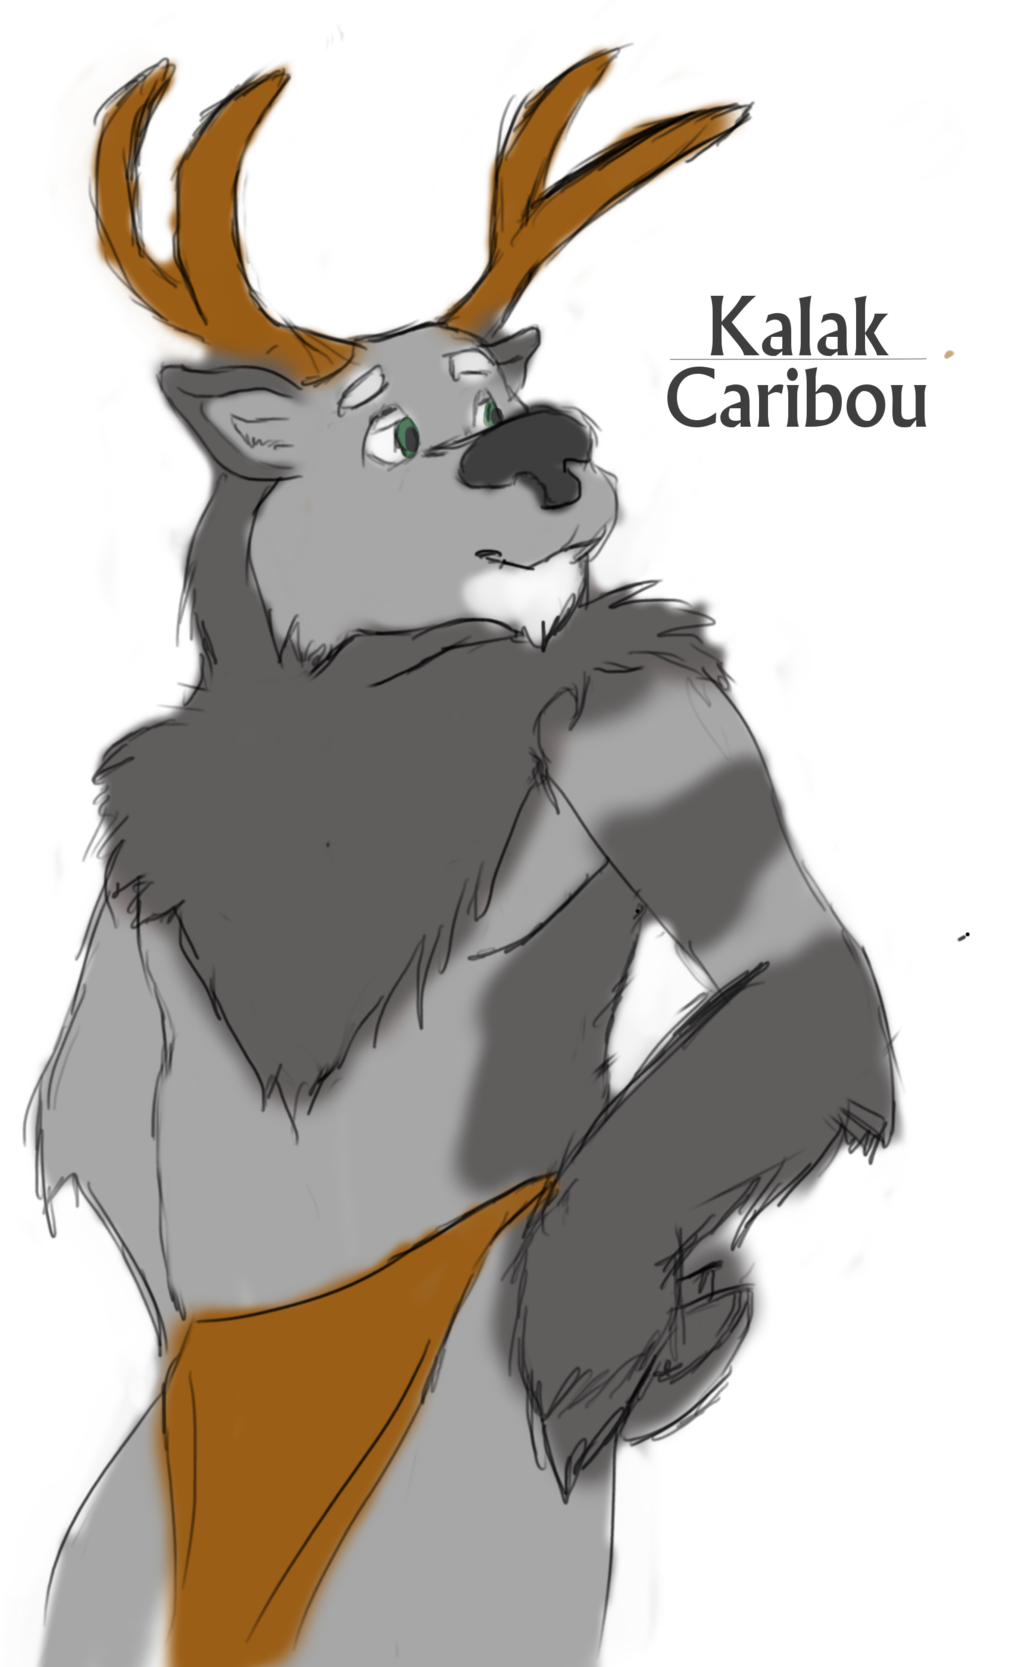 Kalak Caribou